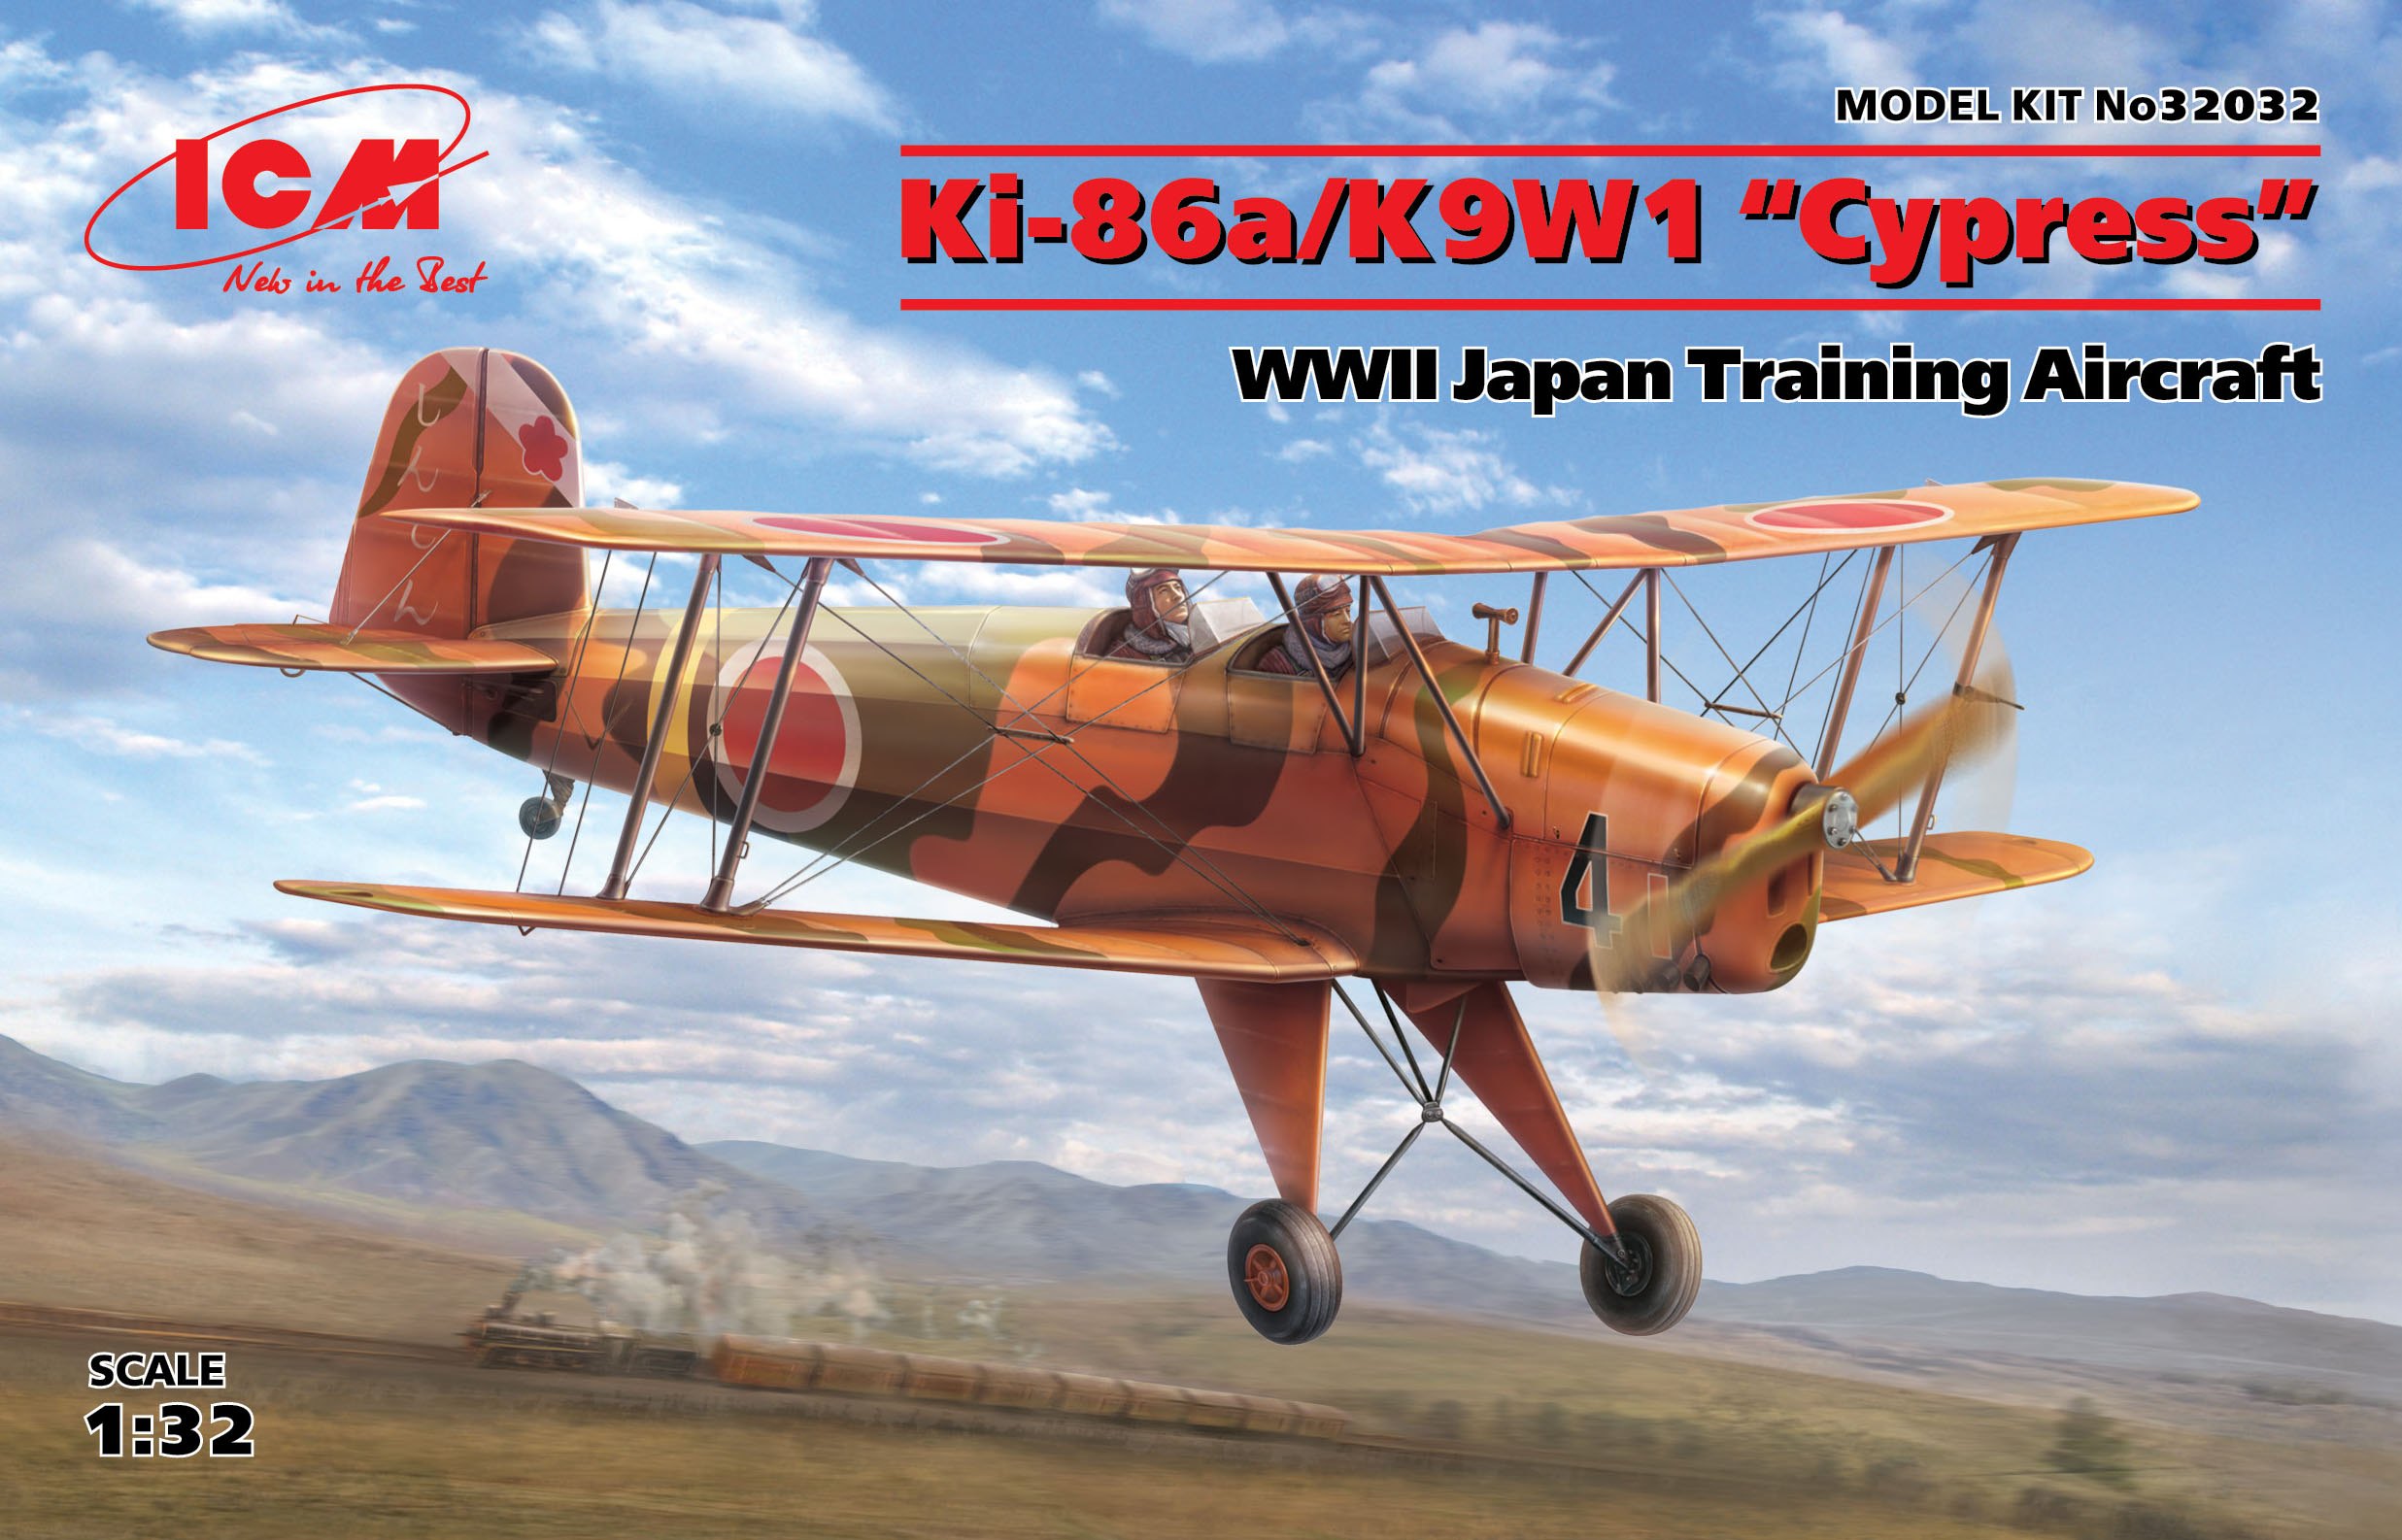 1/32　キ-86　四式基本練習機/二式陸上基本練習機「紅葉」